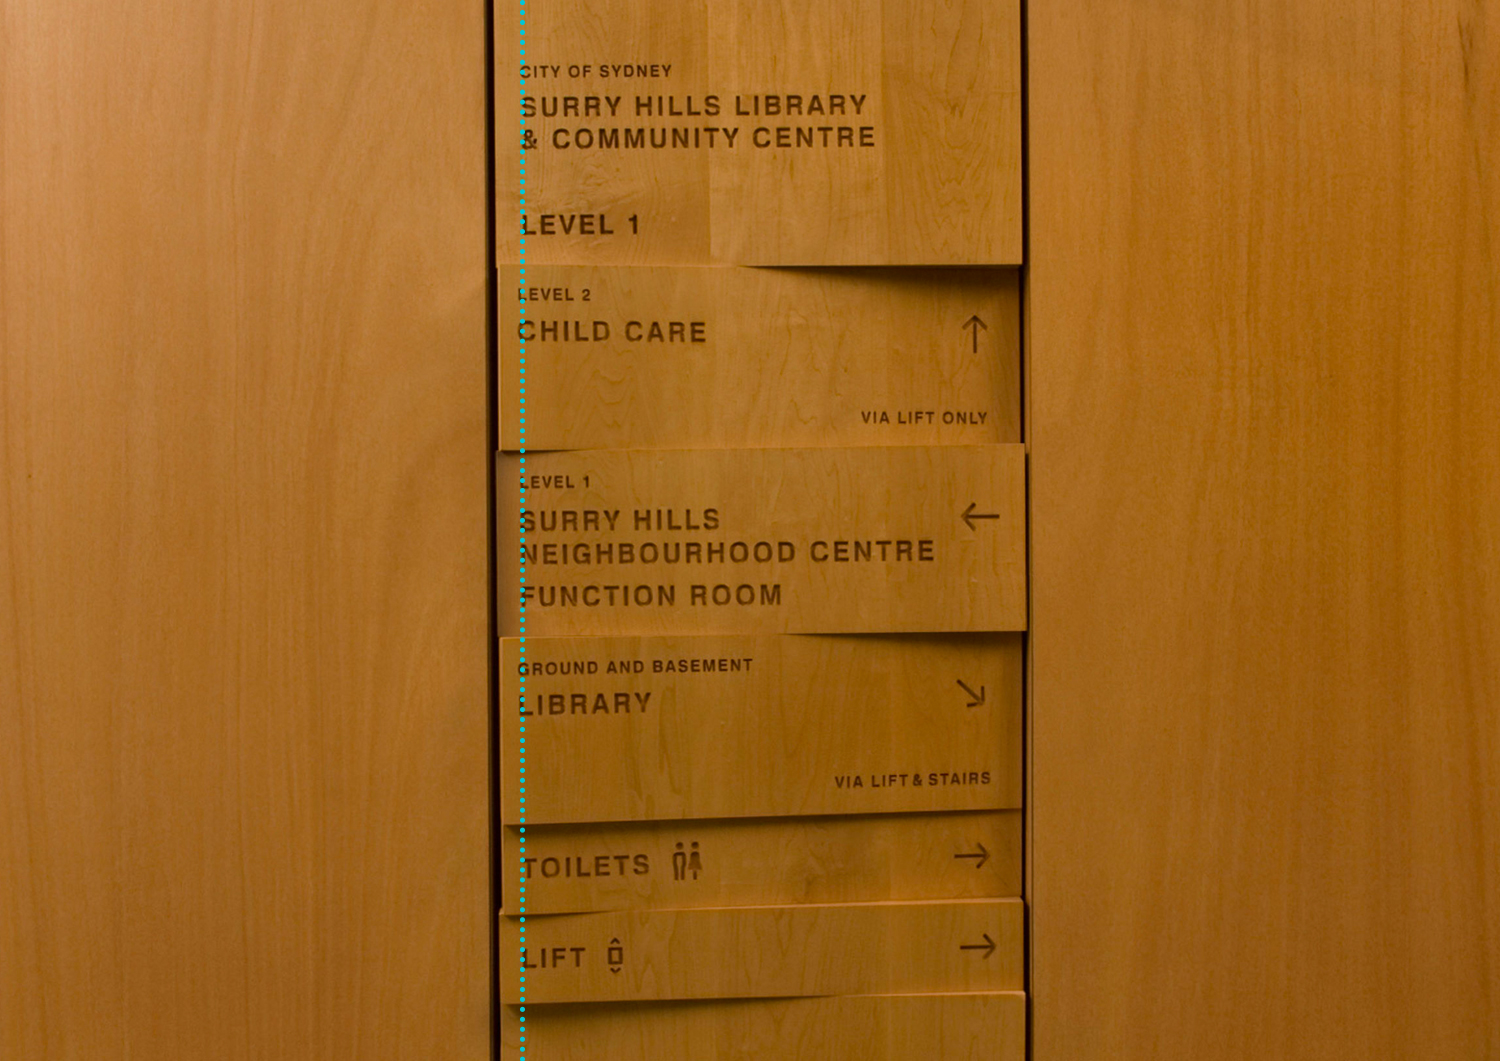 Sinalização da livraria Surry Hills em Sydney como um bom exemplo dos princípios do design de alinhamento